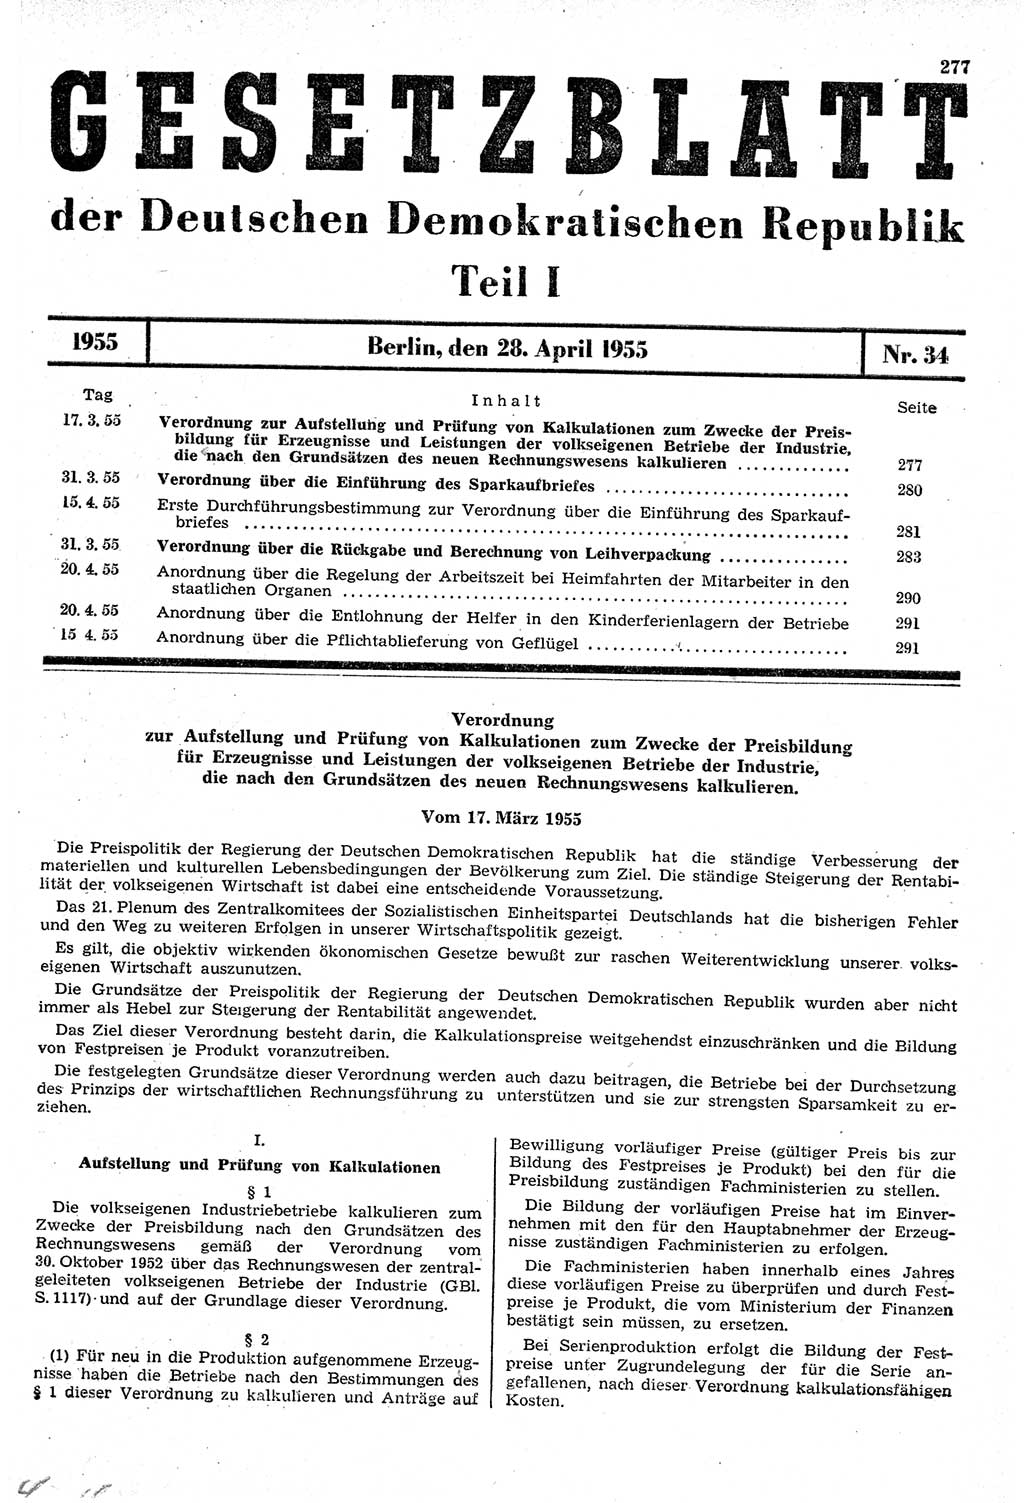 Gesetzblatt (GBl.) der Deutschen Demokratischen Republik (DDR) Teil Ⅰ 1955, Seite 277 (GBl. DDR Ⅰ 1955, S. 277)